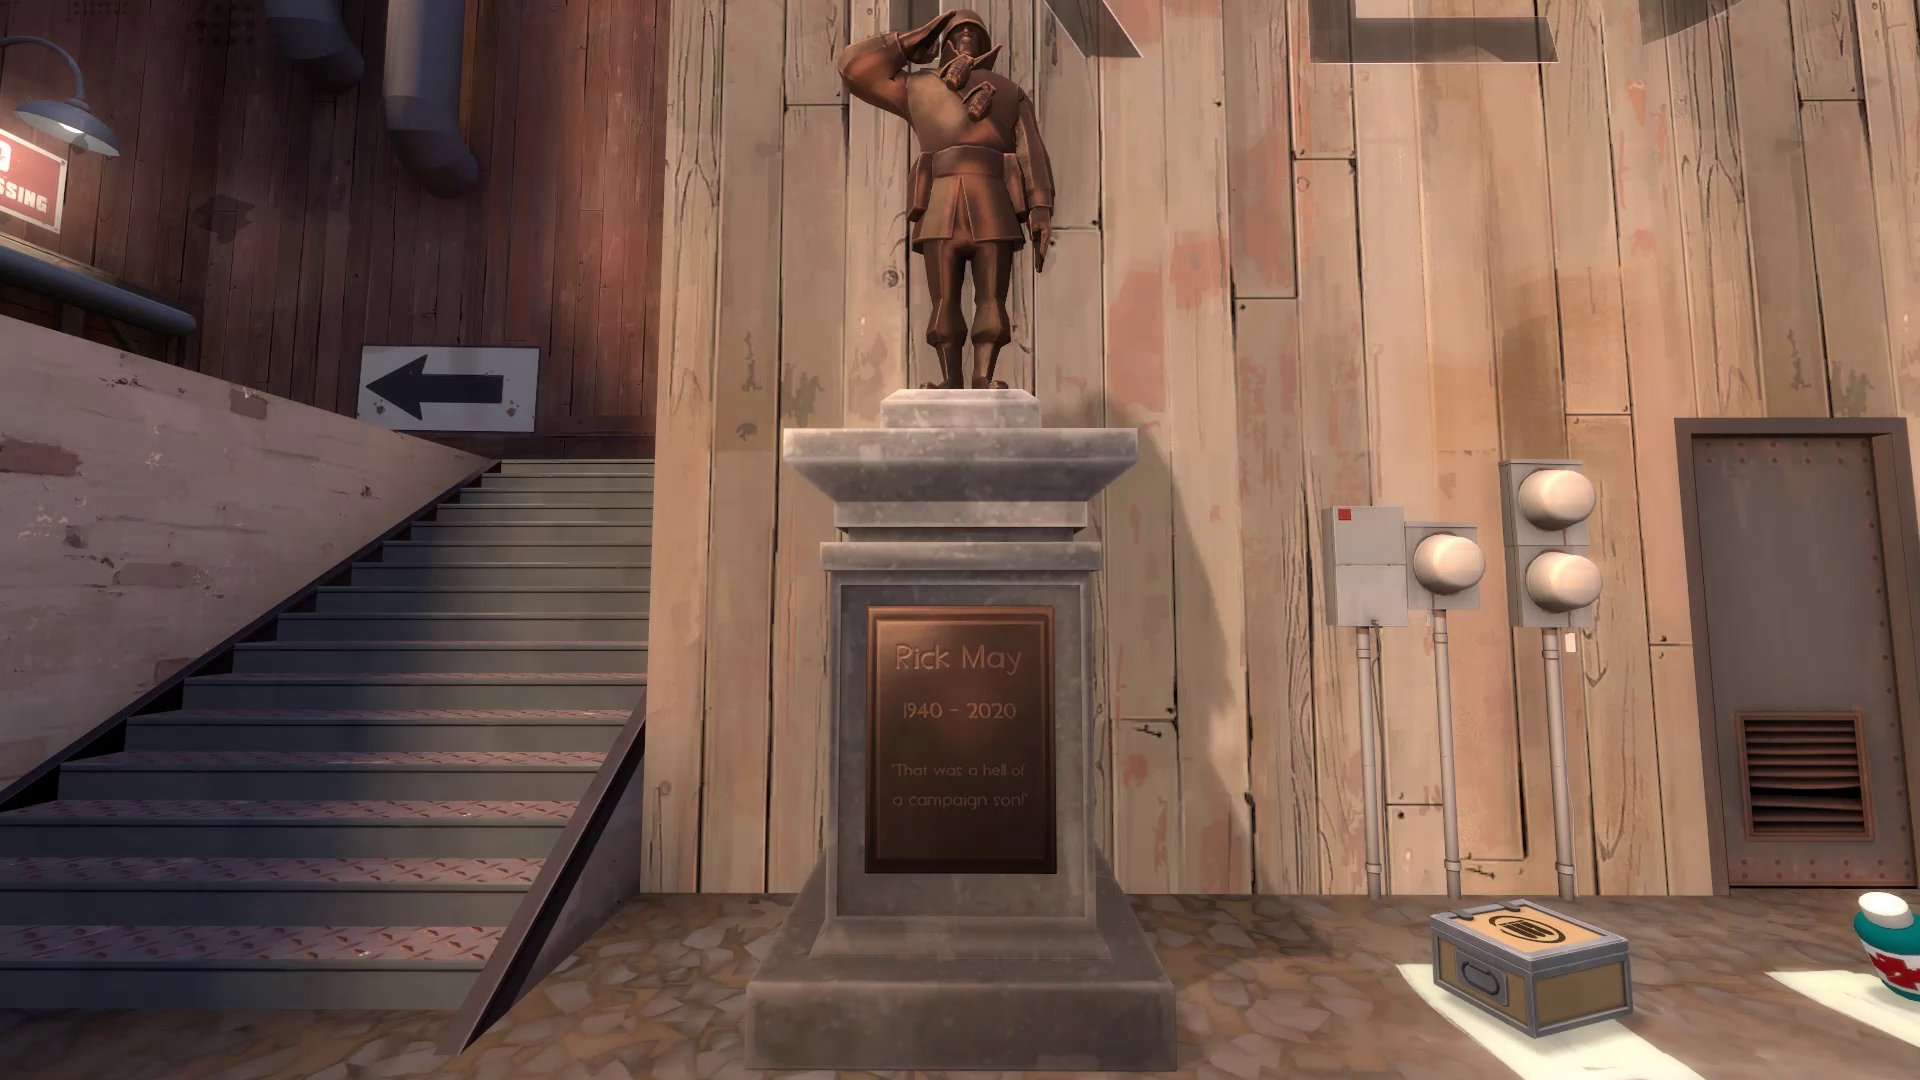 Valentin Cebo on Twitter: "Valve a ajouté une statue en hommage à Rick...